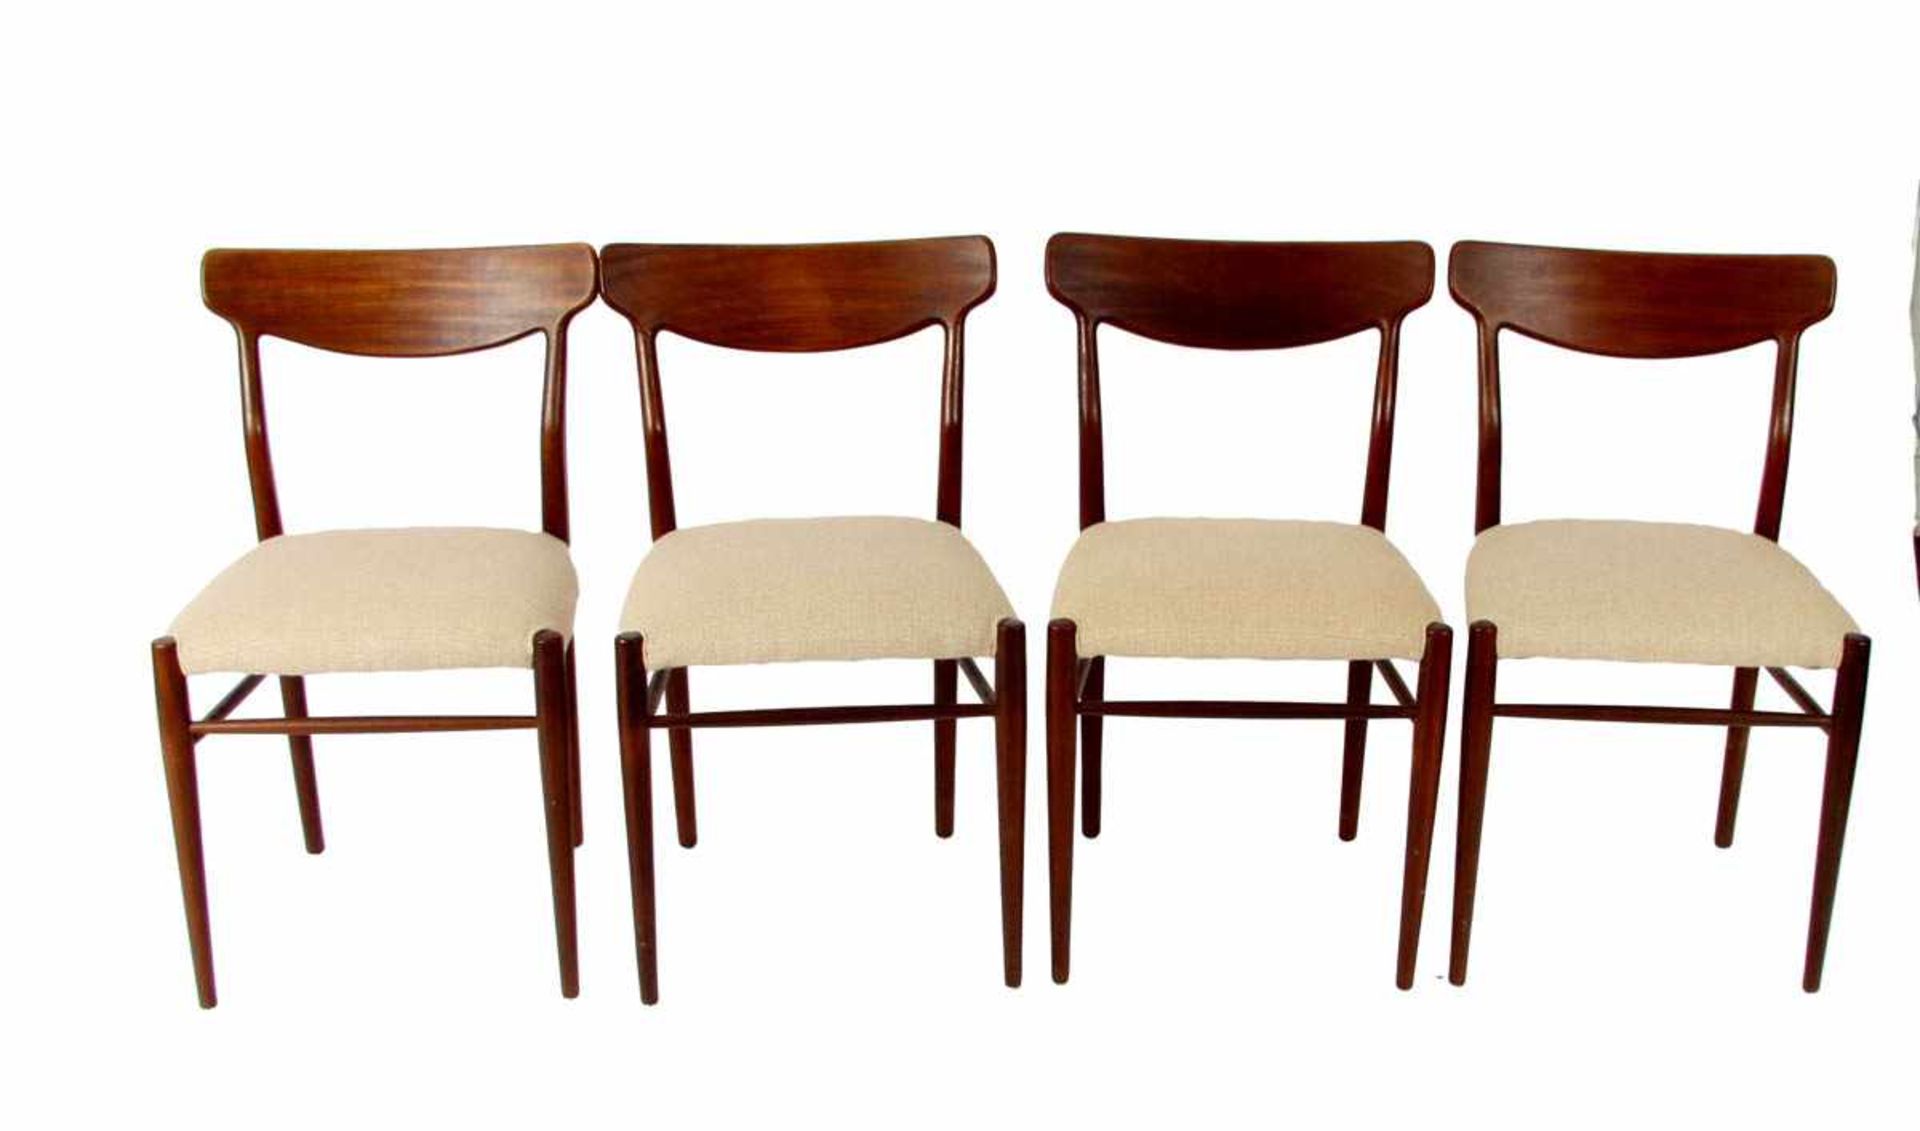 4 Stühle, AS Mobelier, Dänemark um 1970 Teakholz. Gerade gerundete Beine, gerade Zarge Sitz